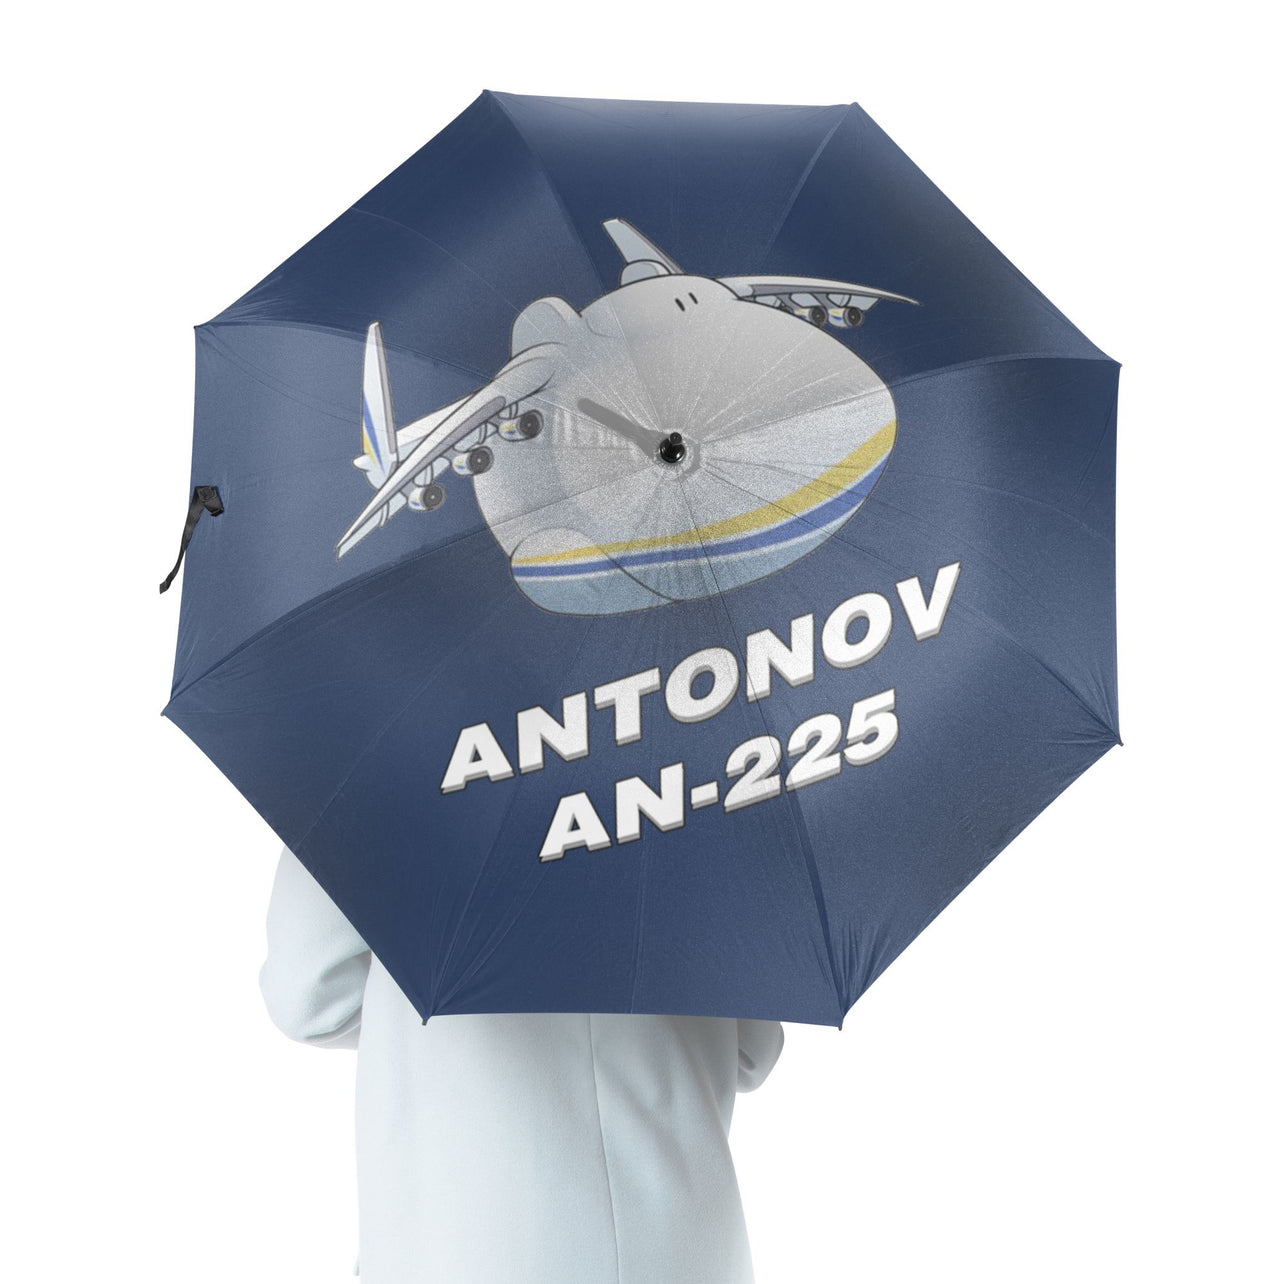 Antonov AN-225 (21) Designed Umbrella